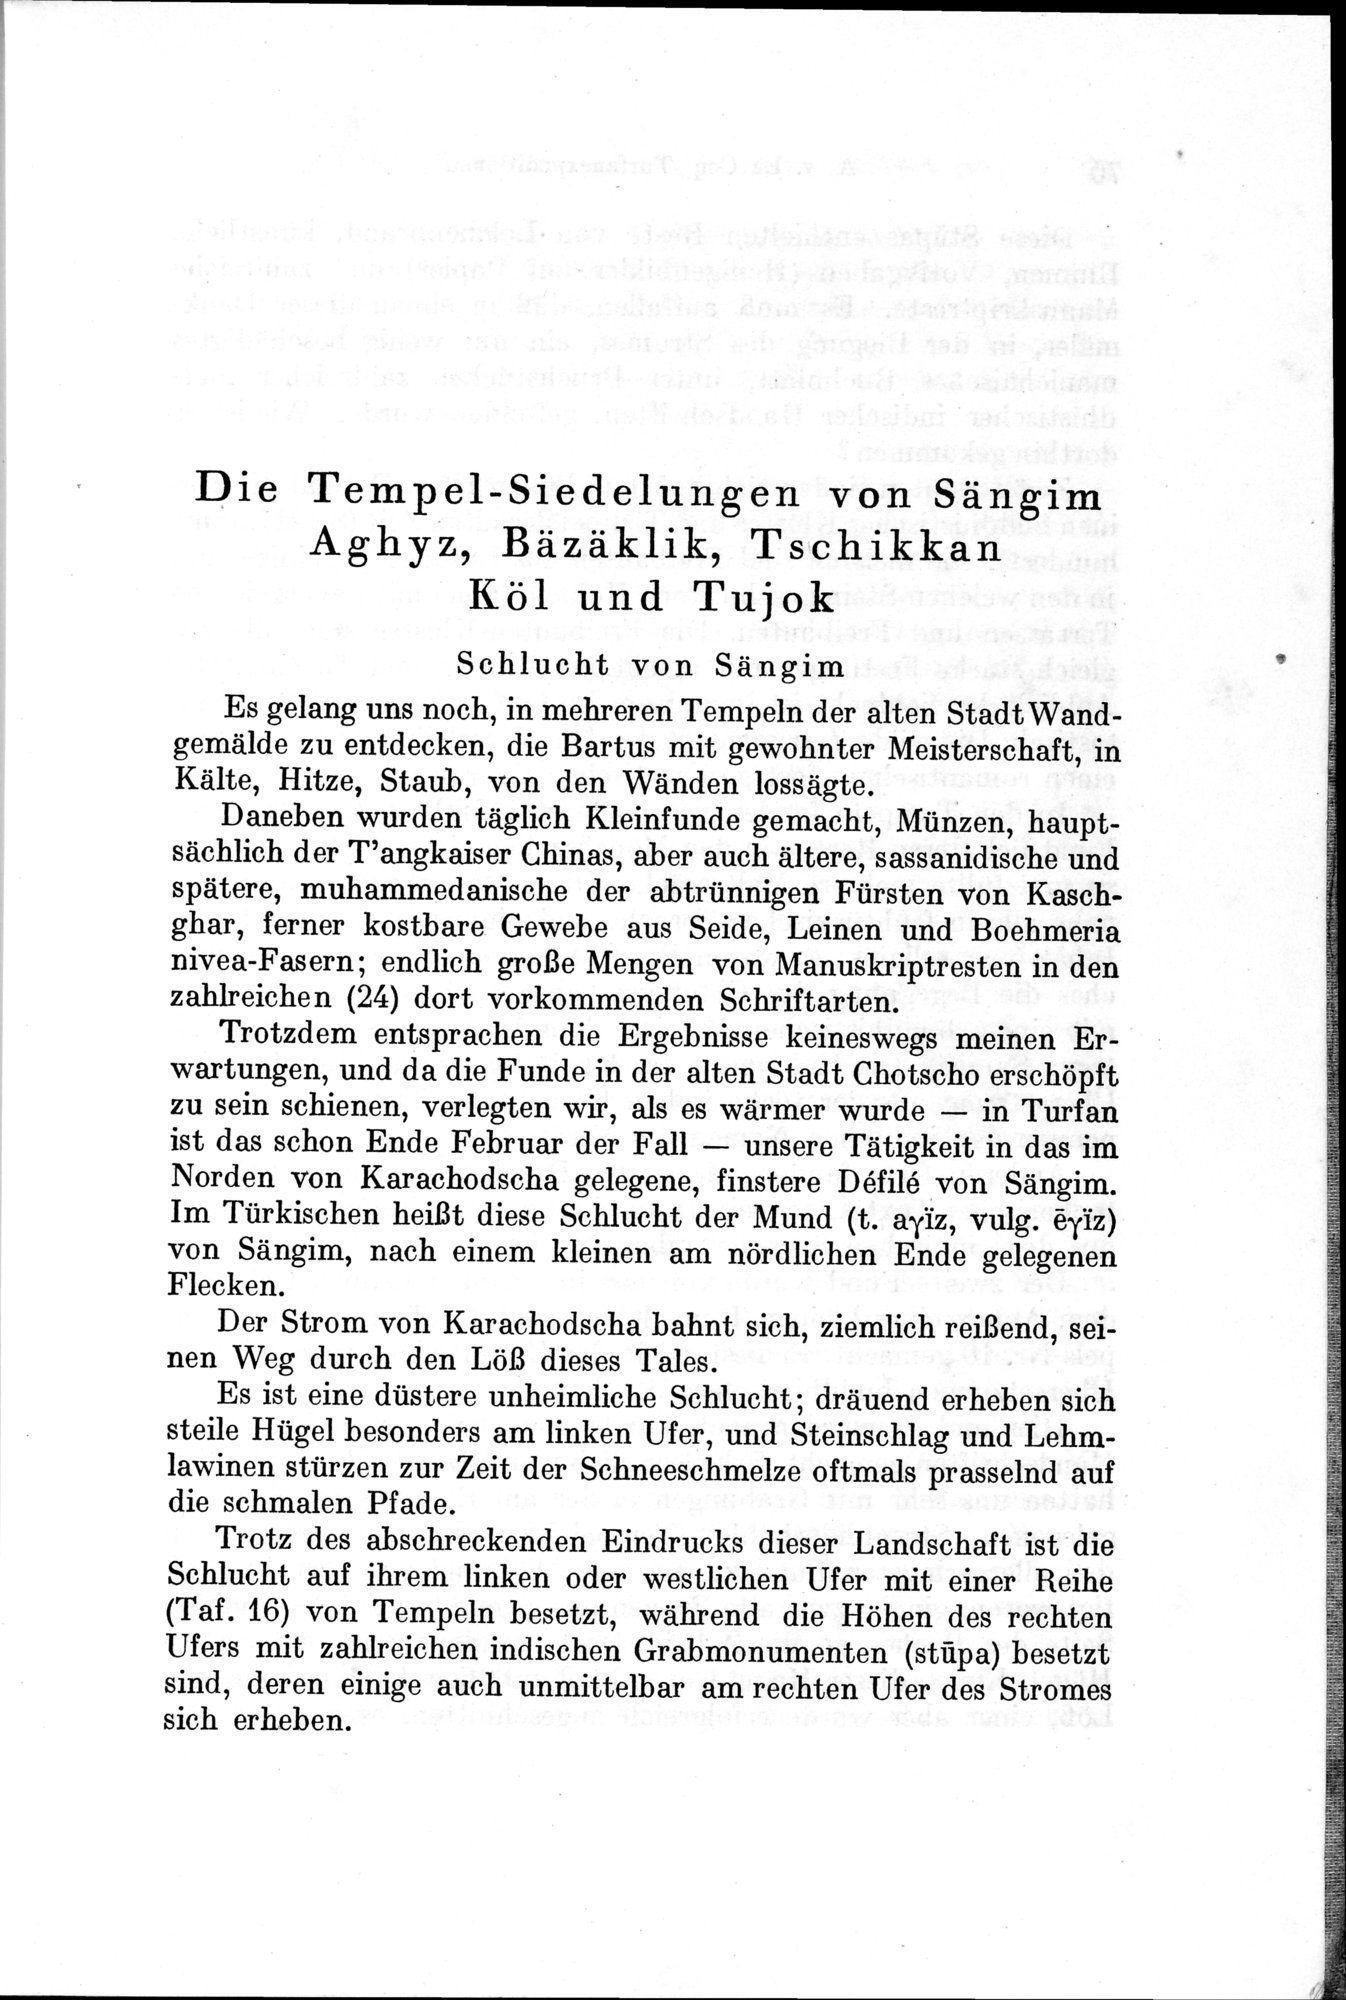 Auf Hellas Spuren in Ostturkistan : vol.1 / Page 103 (Grayscale High Resolution Image)